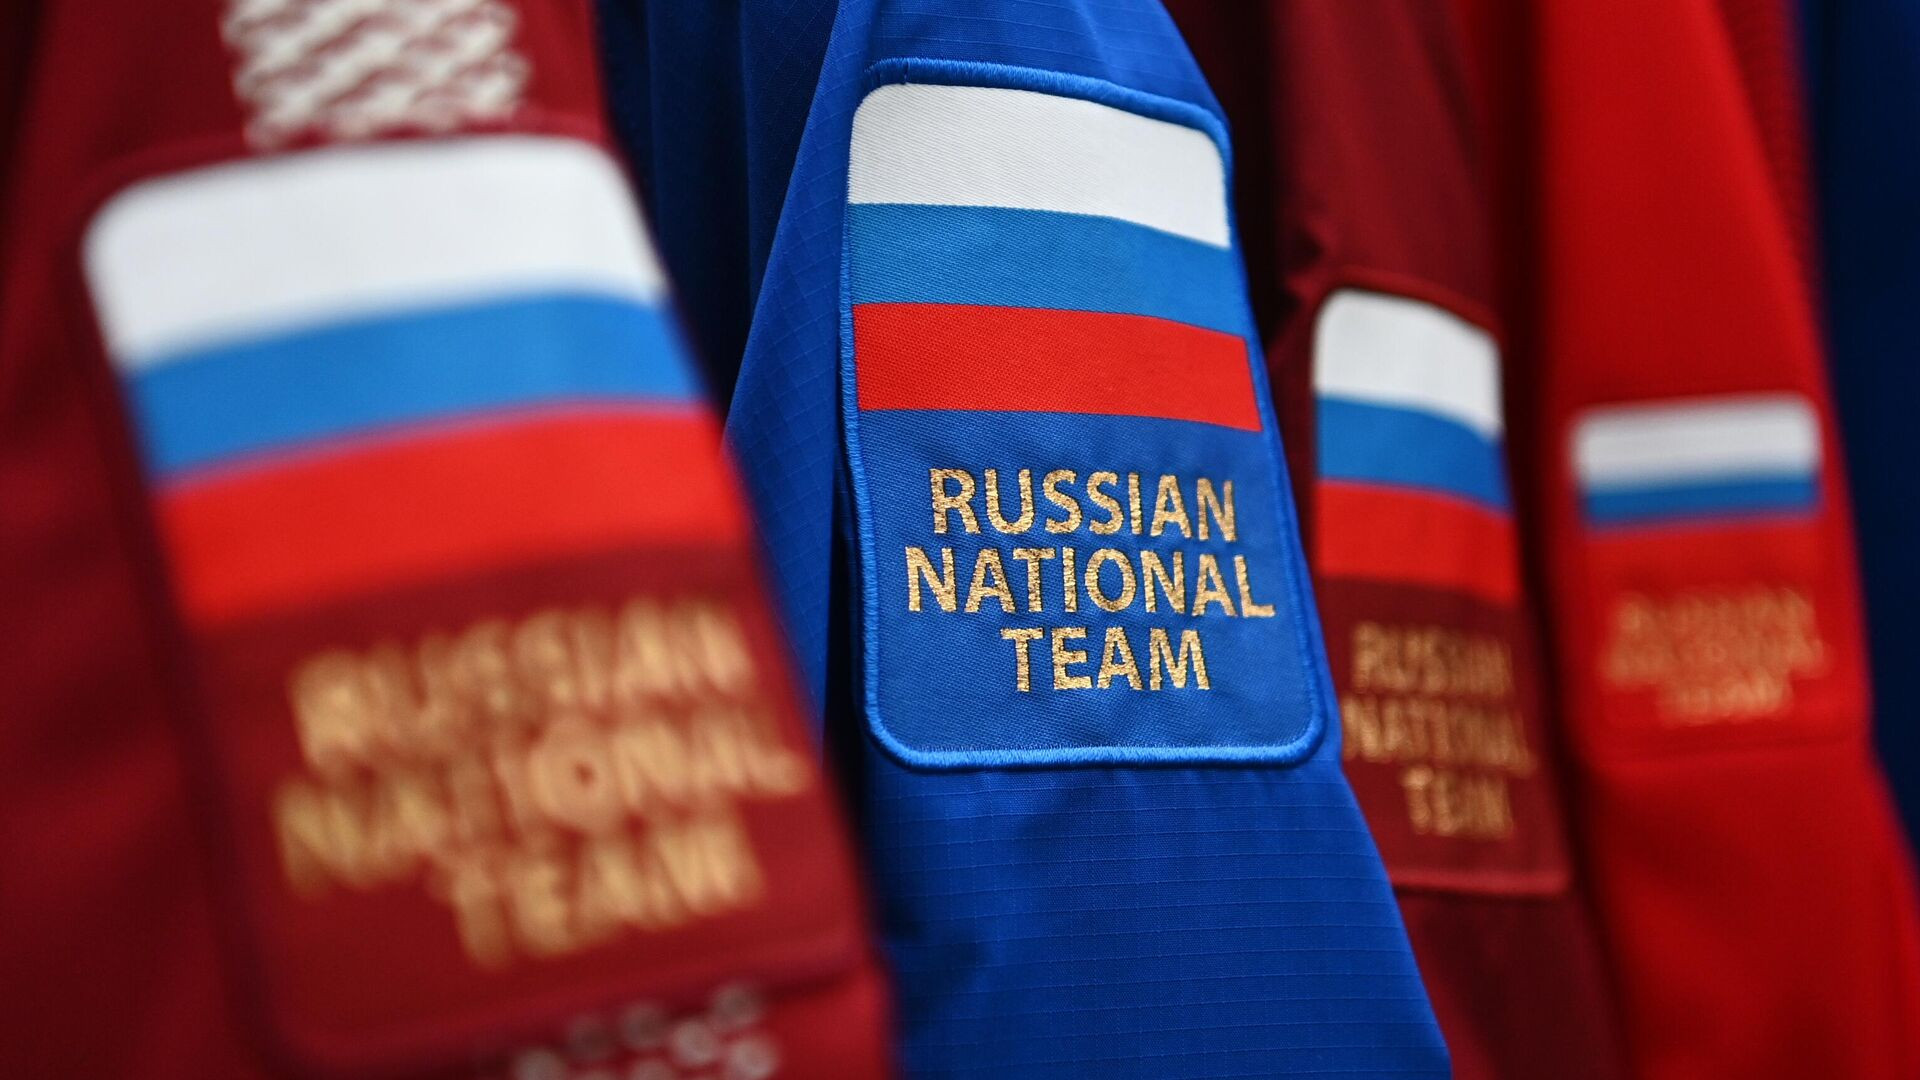 Օլիմպիական խաղերում ռուսները որակազրկվելու են դրոշի կամ Z նշանի ցուցադրման դեպքում. ՄՕԿ նախագահ